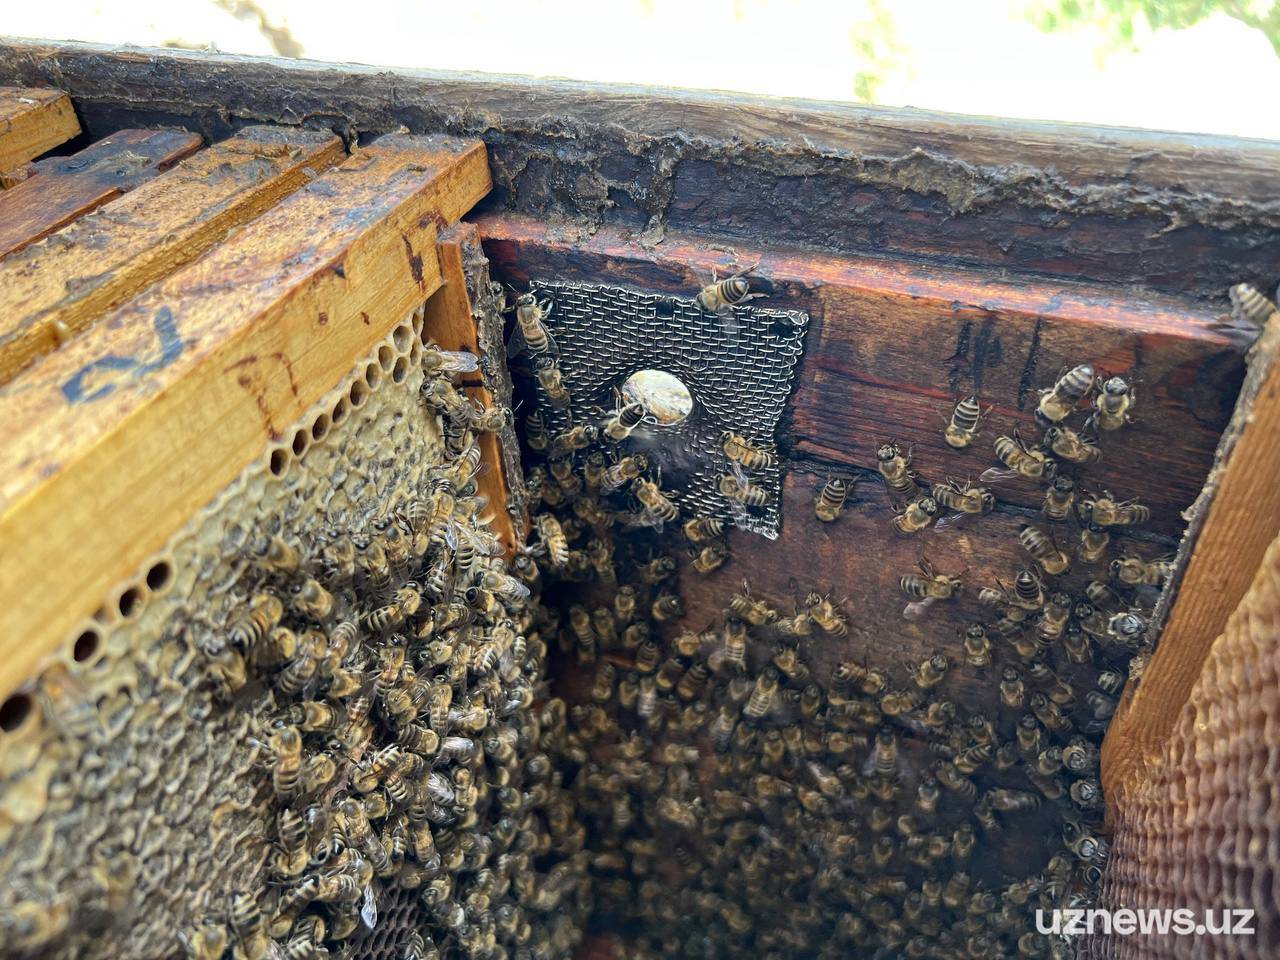 Пасека своими руками — практическое руководство для начинающих пчеловодов